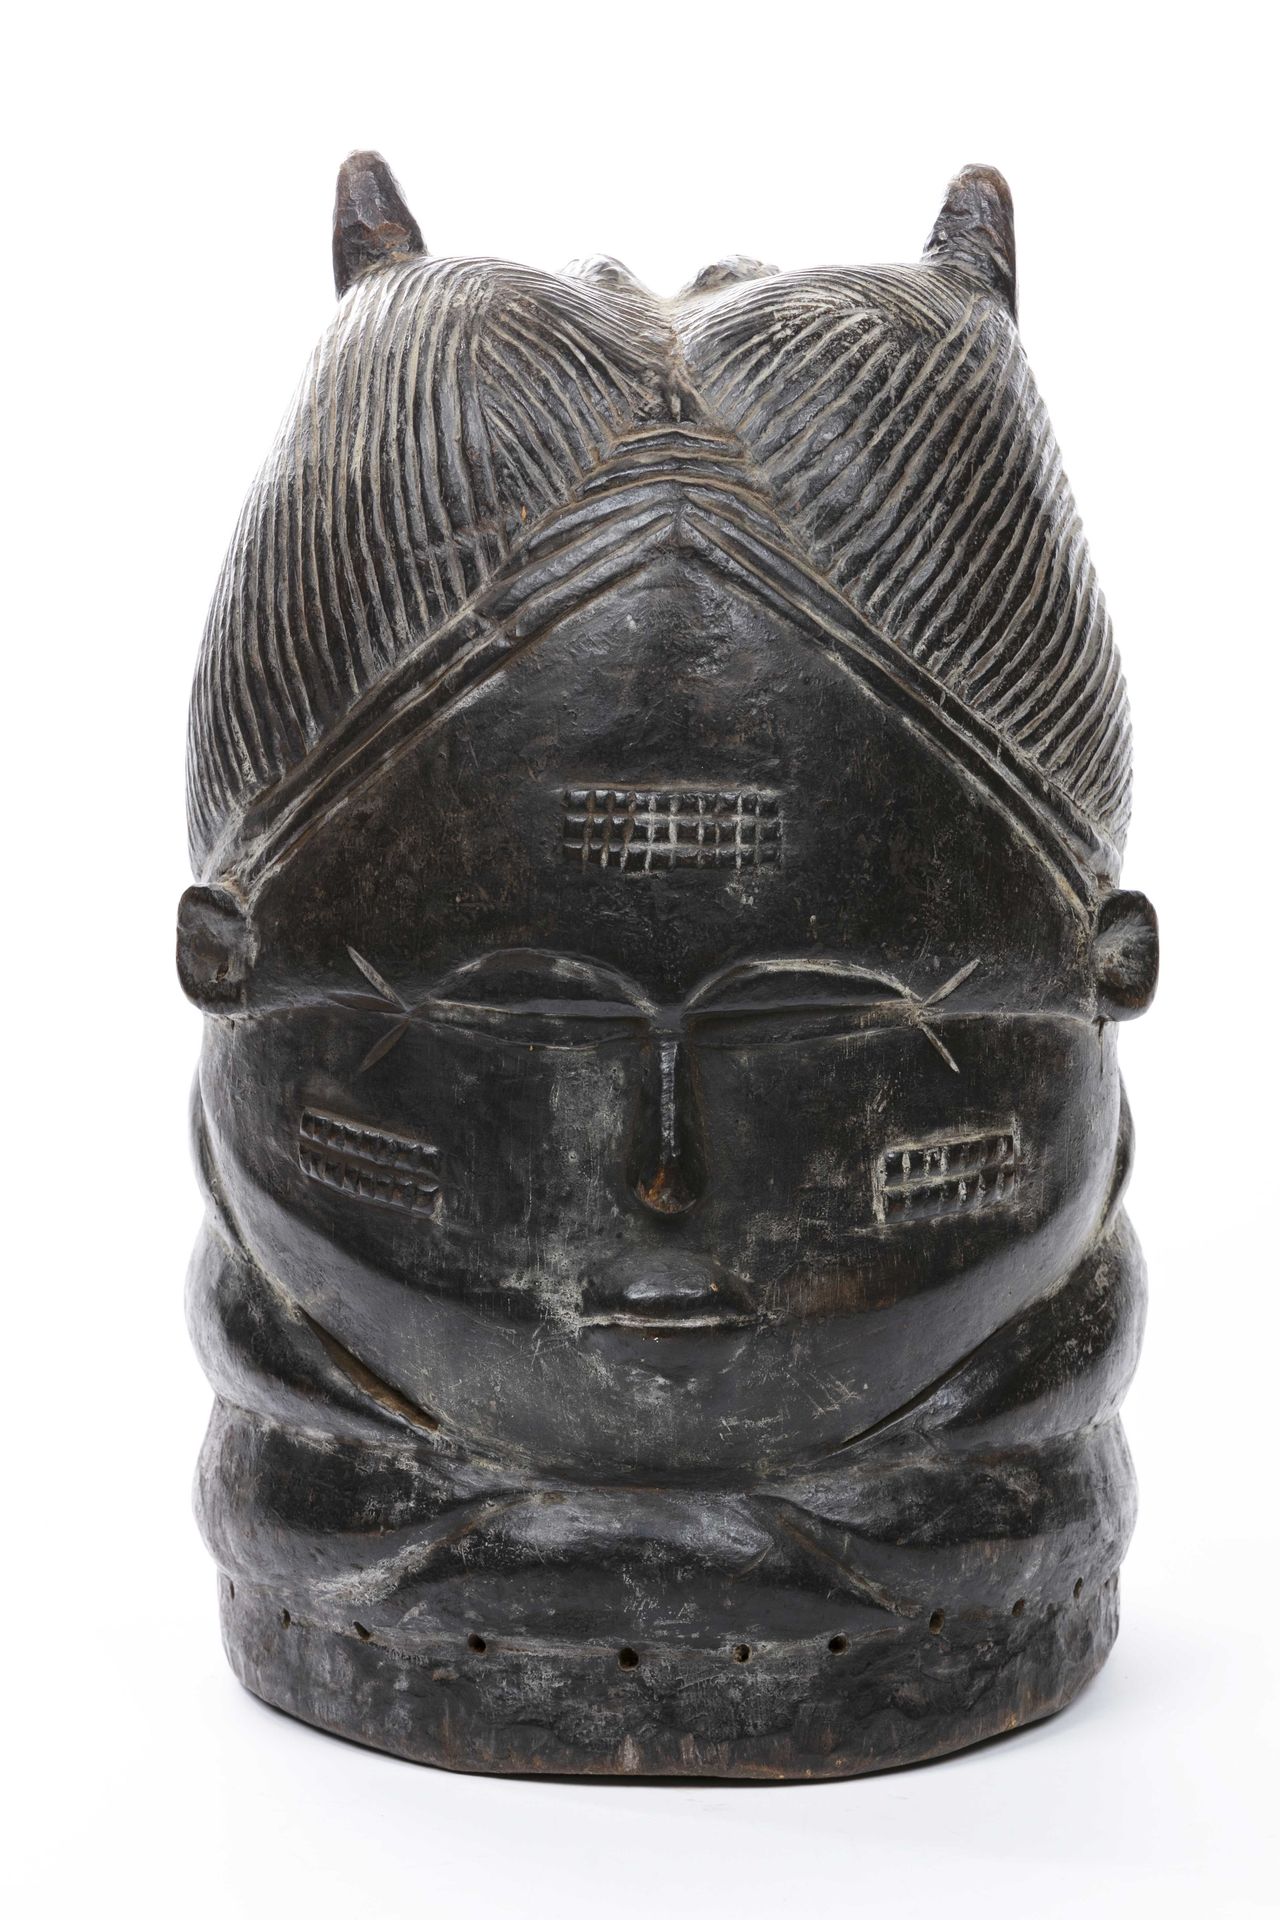 Null Bundu Mende风格的头盔面具 
塞拉里昂
木头
高度：38厘米
闭着的小眼睛突出了造型的柔和、精致和宁静的表现力，眼睛的两端有十字形的疤痕，额&hellip;